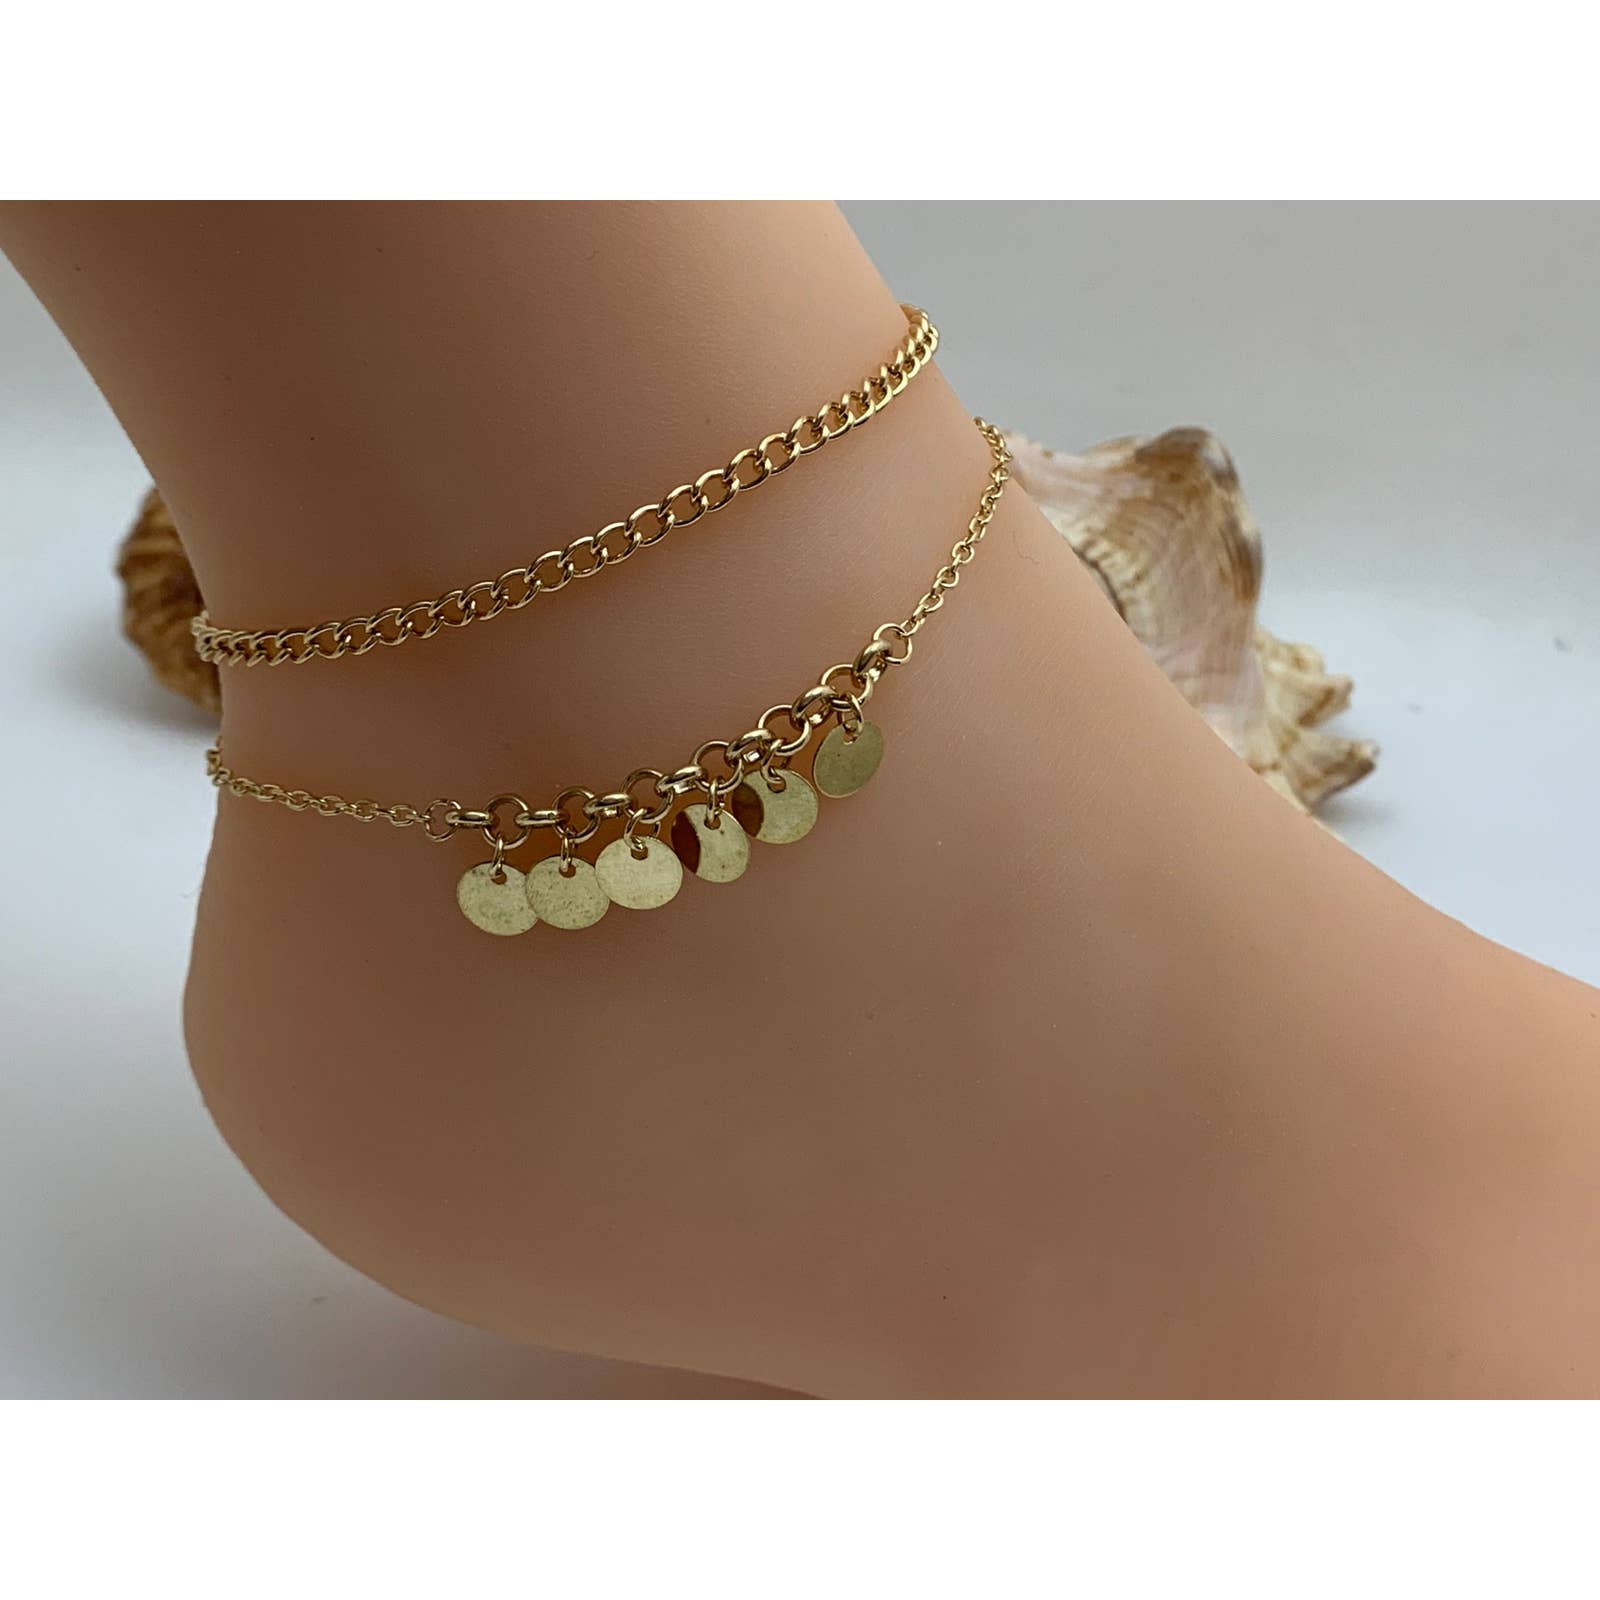 Starfish seashell ankle bracelet | Ankle bracelets, Bracelet shops,  Bracelets